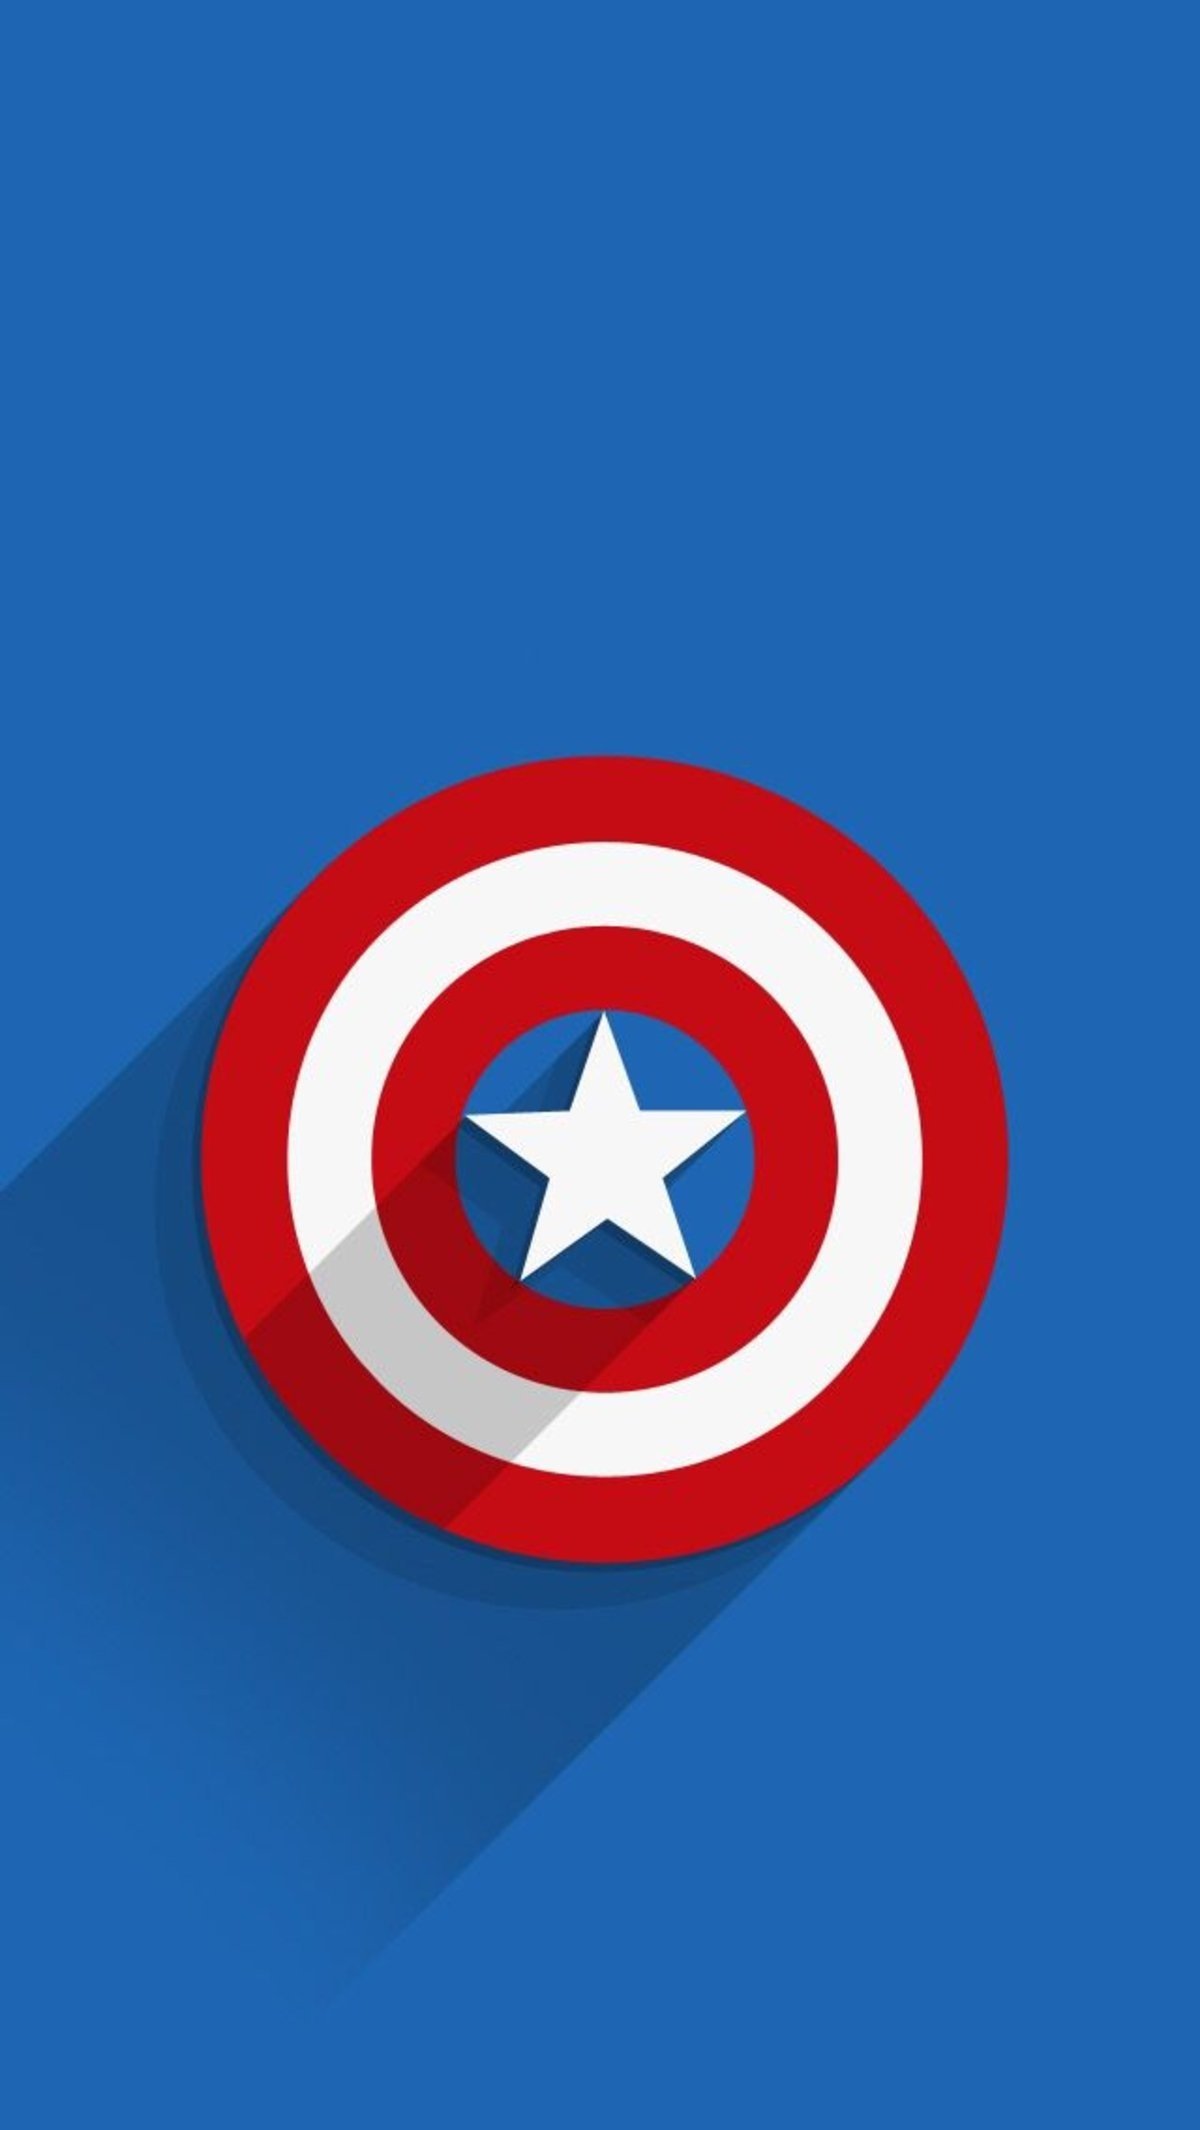 Tunea tu Android al estilo Capitán América: Civil War